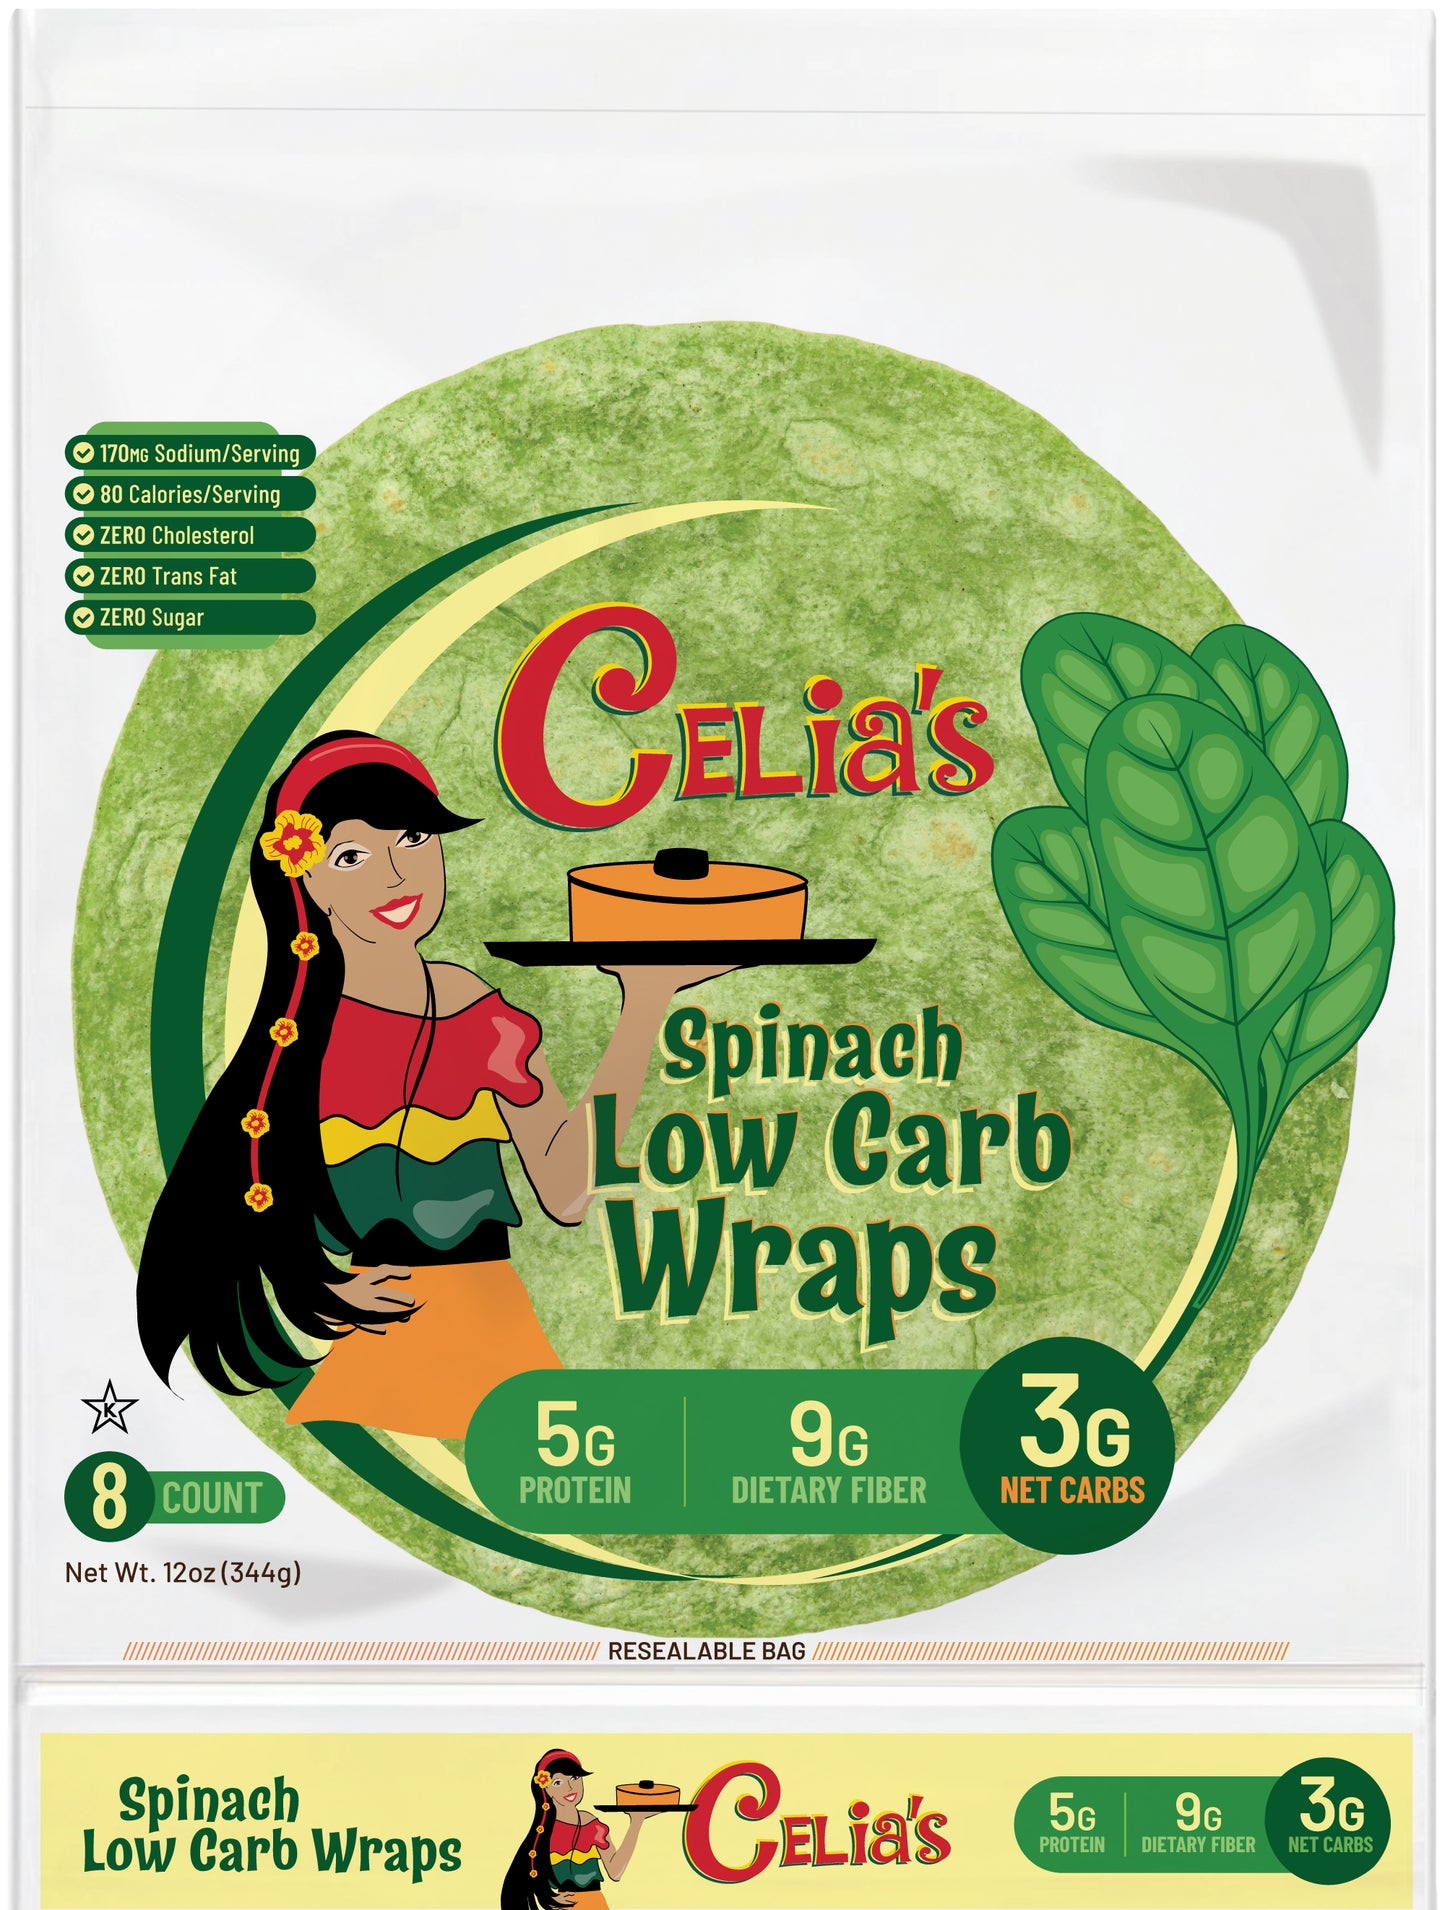 Bundle of Celia's Low Carb Wraps